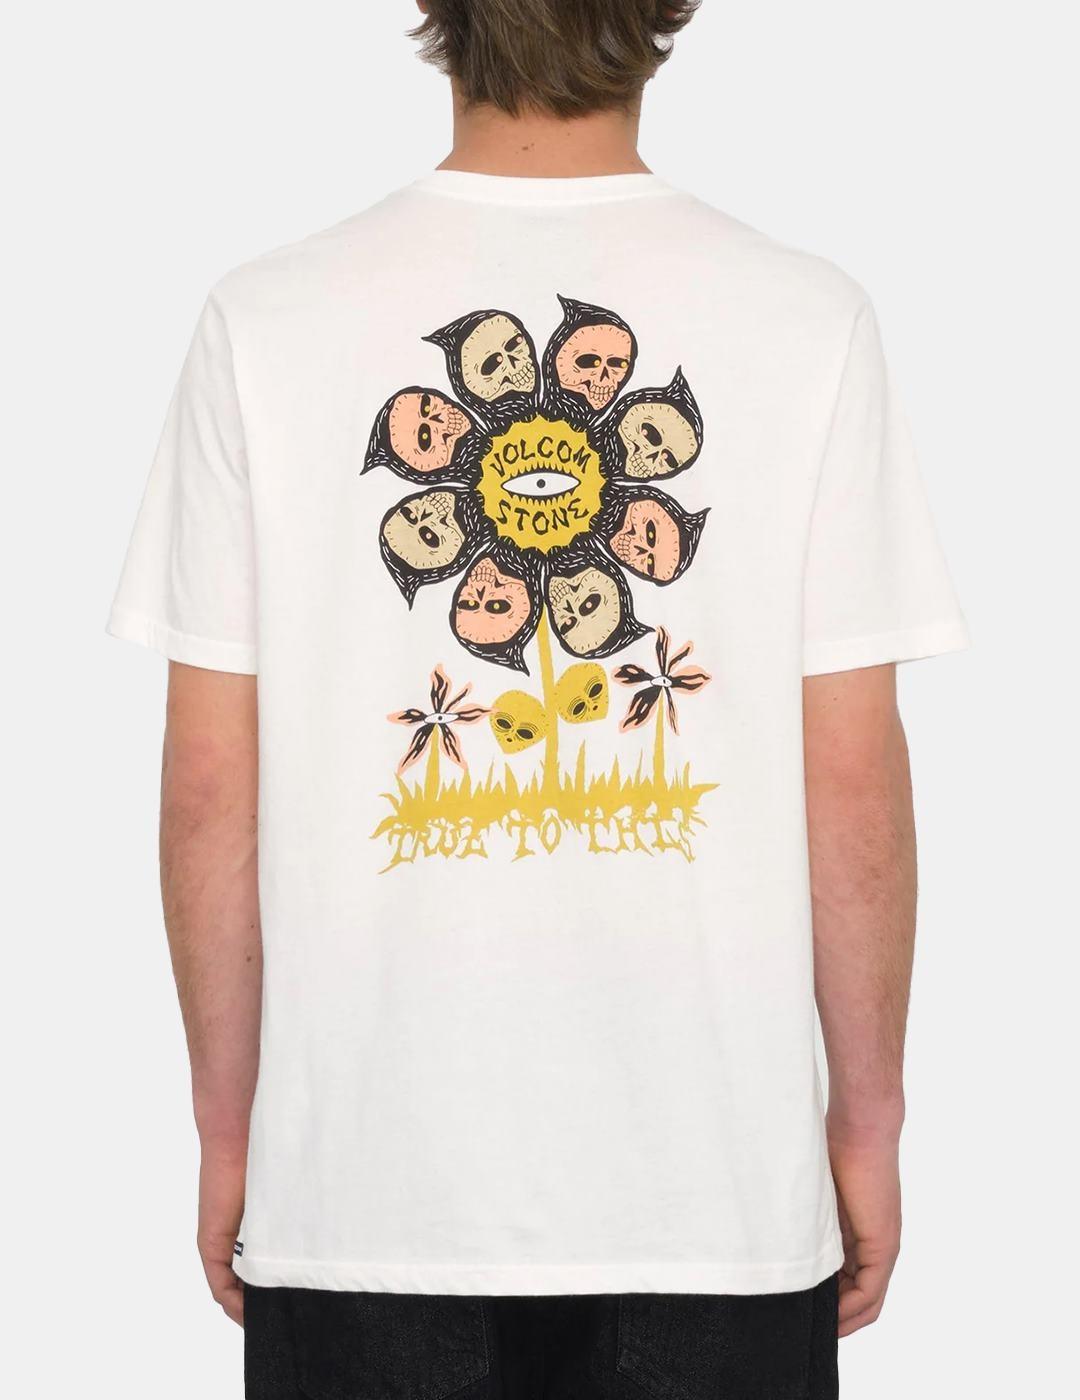 Camiseta Volcom Flower Budz Fty Blanco